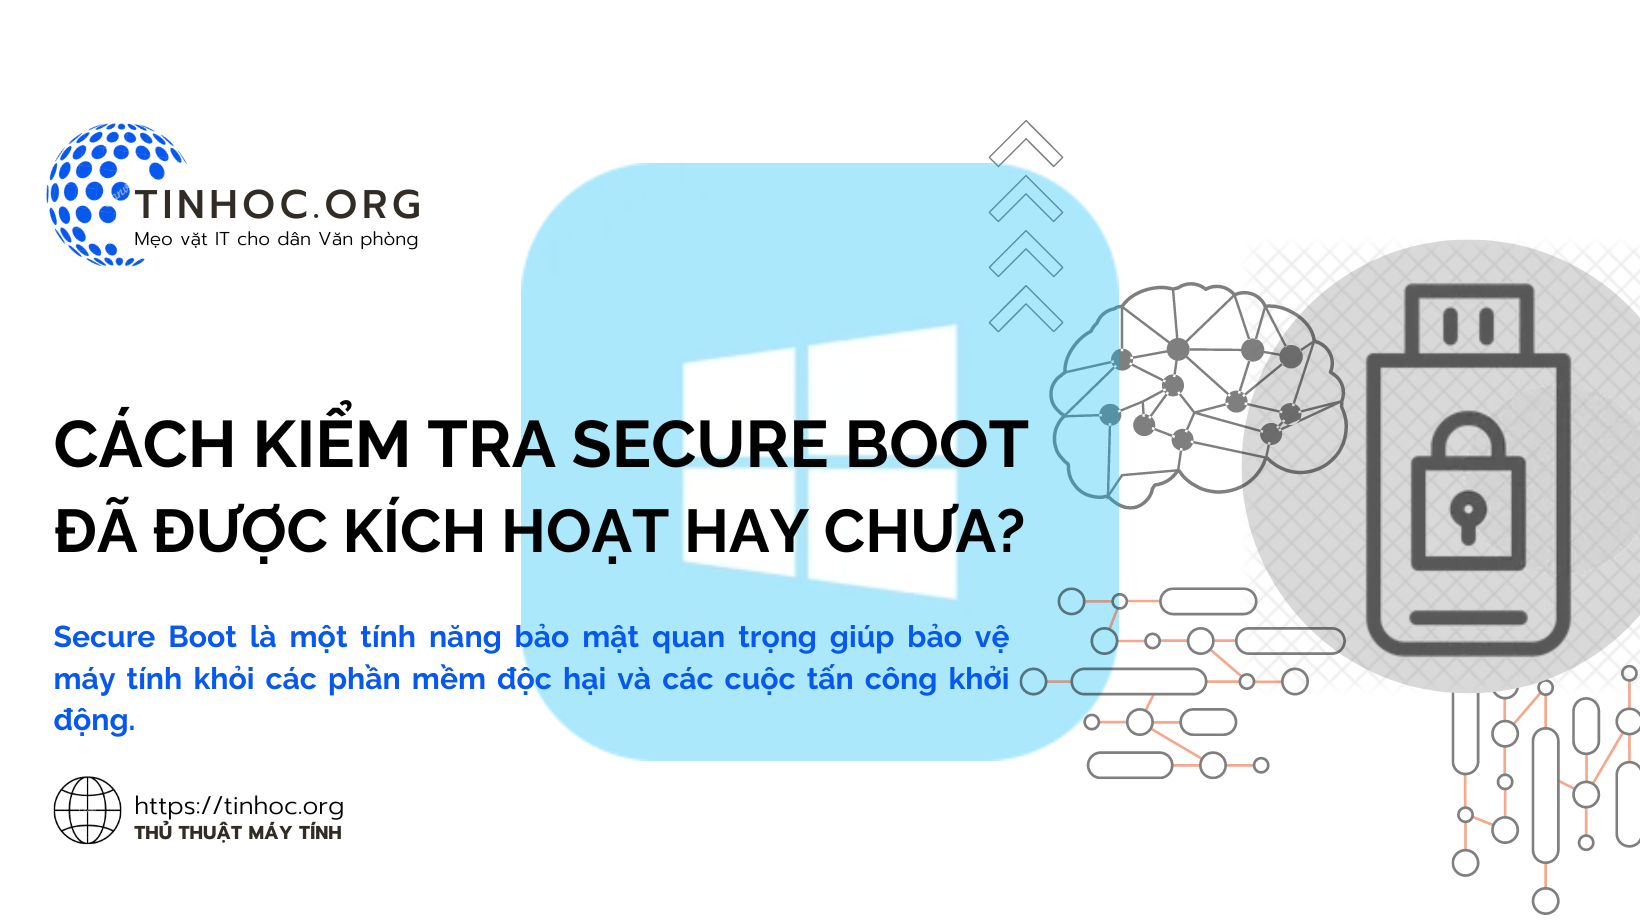 Secure Boot là một tính năng bảo mật quan trọng giúp bảo vệ máy tính khỏi các phần mềm độc hại và các cuộc tấn công khởi động.